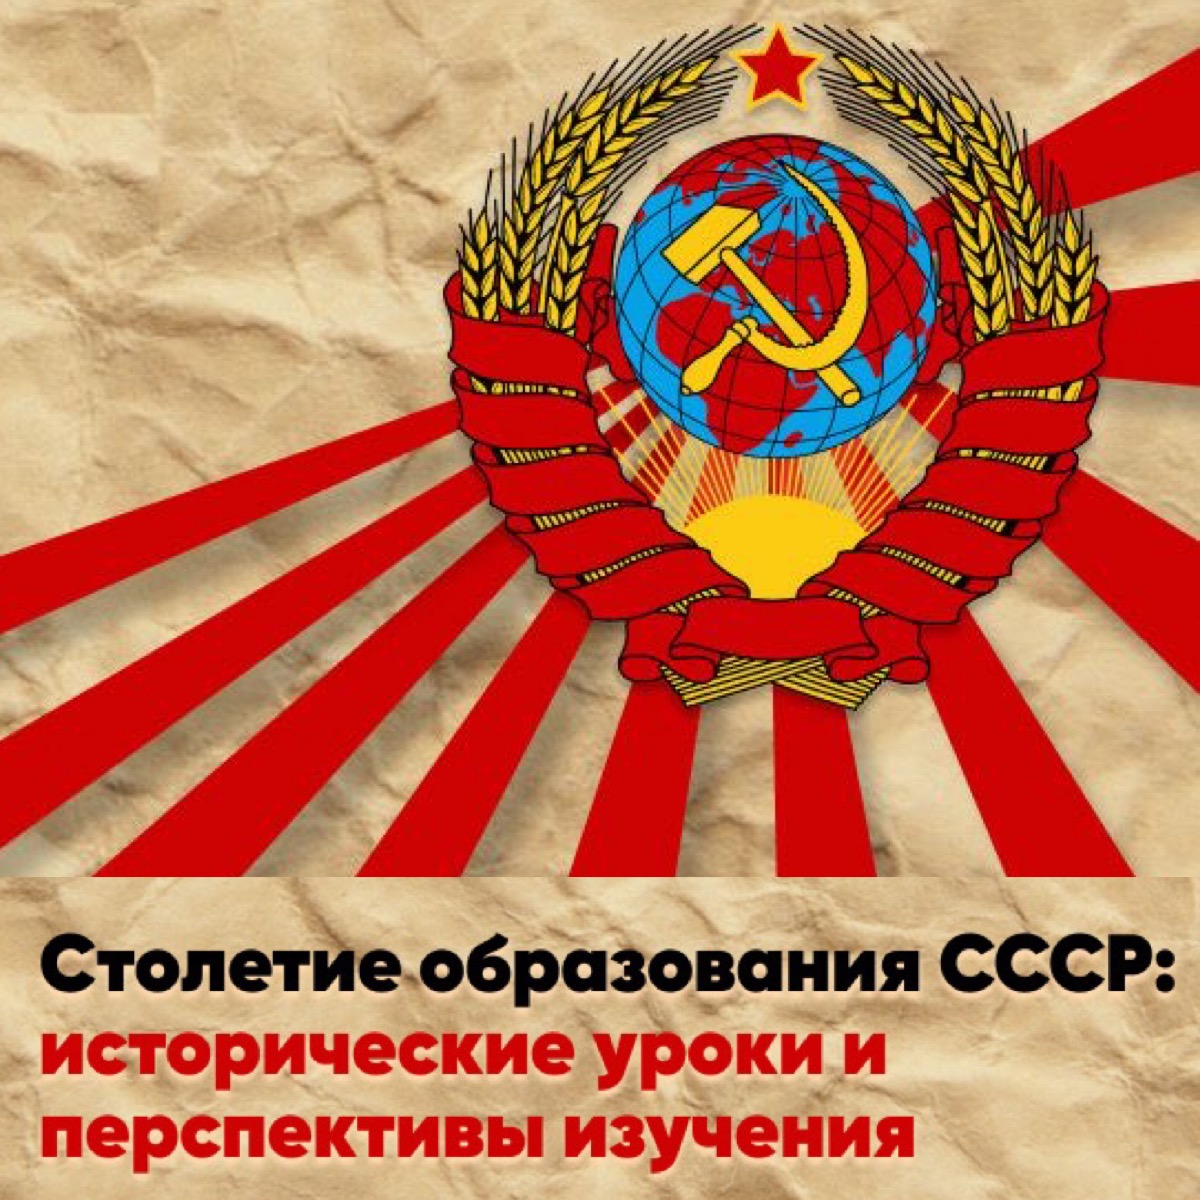 Конференция "Столетие образования СССР: исторические итоги и перспективы изучения"